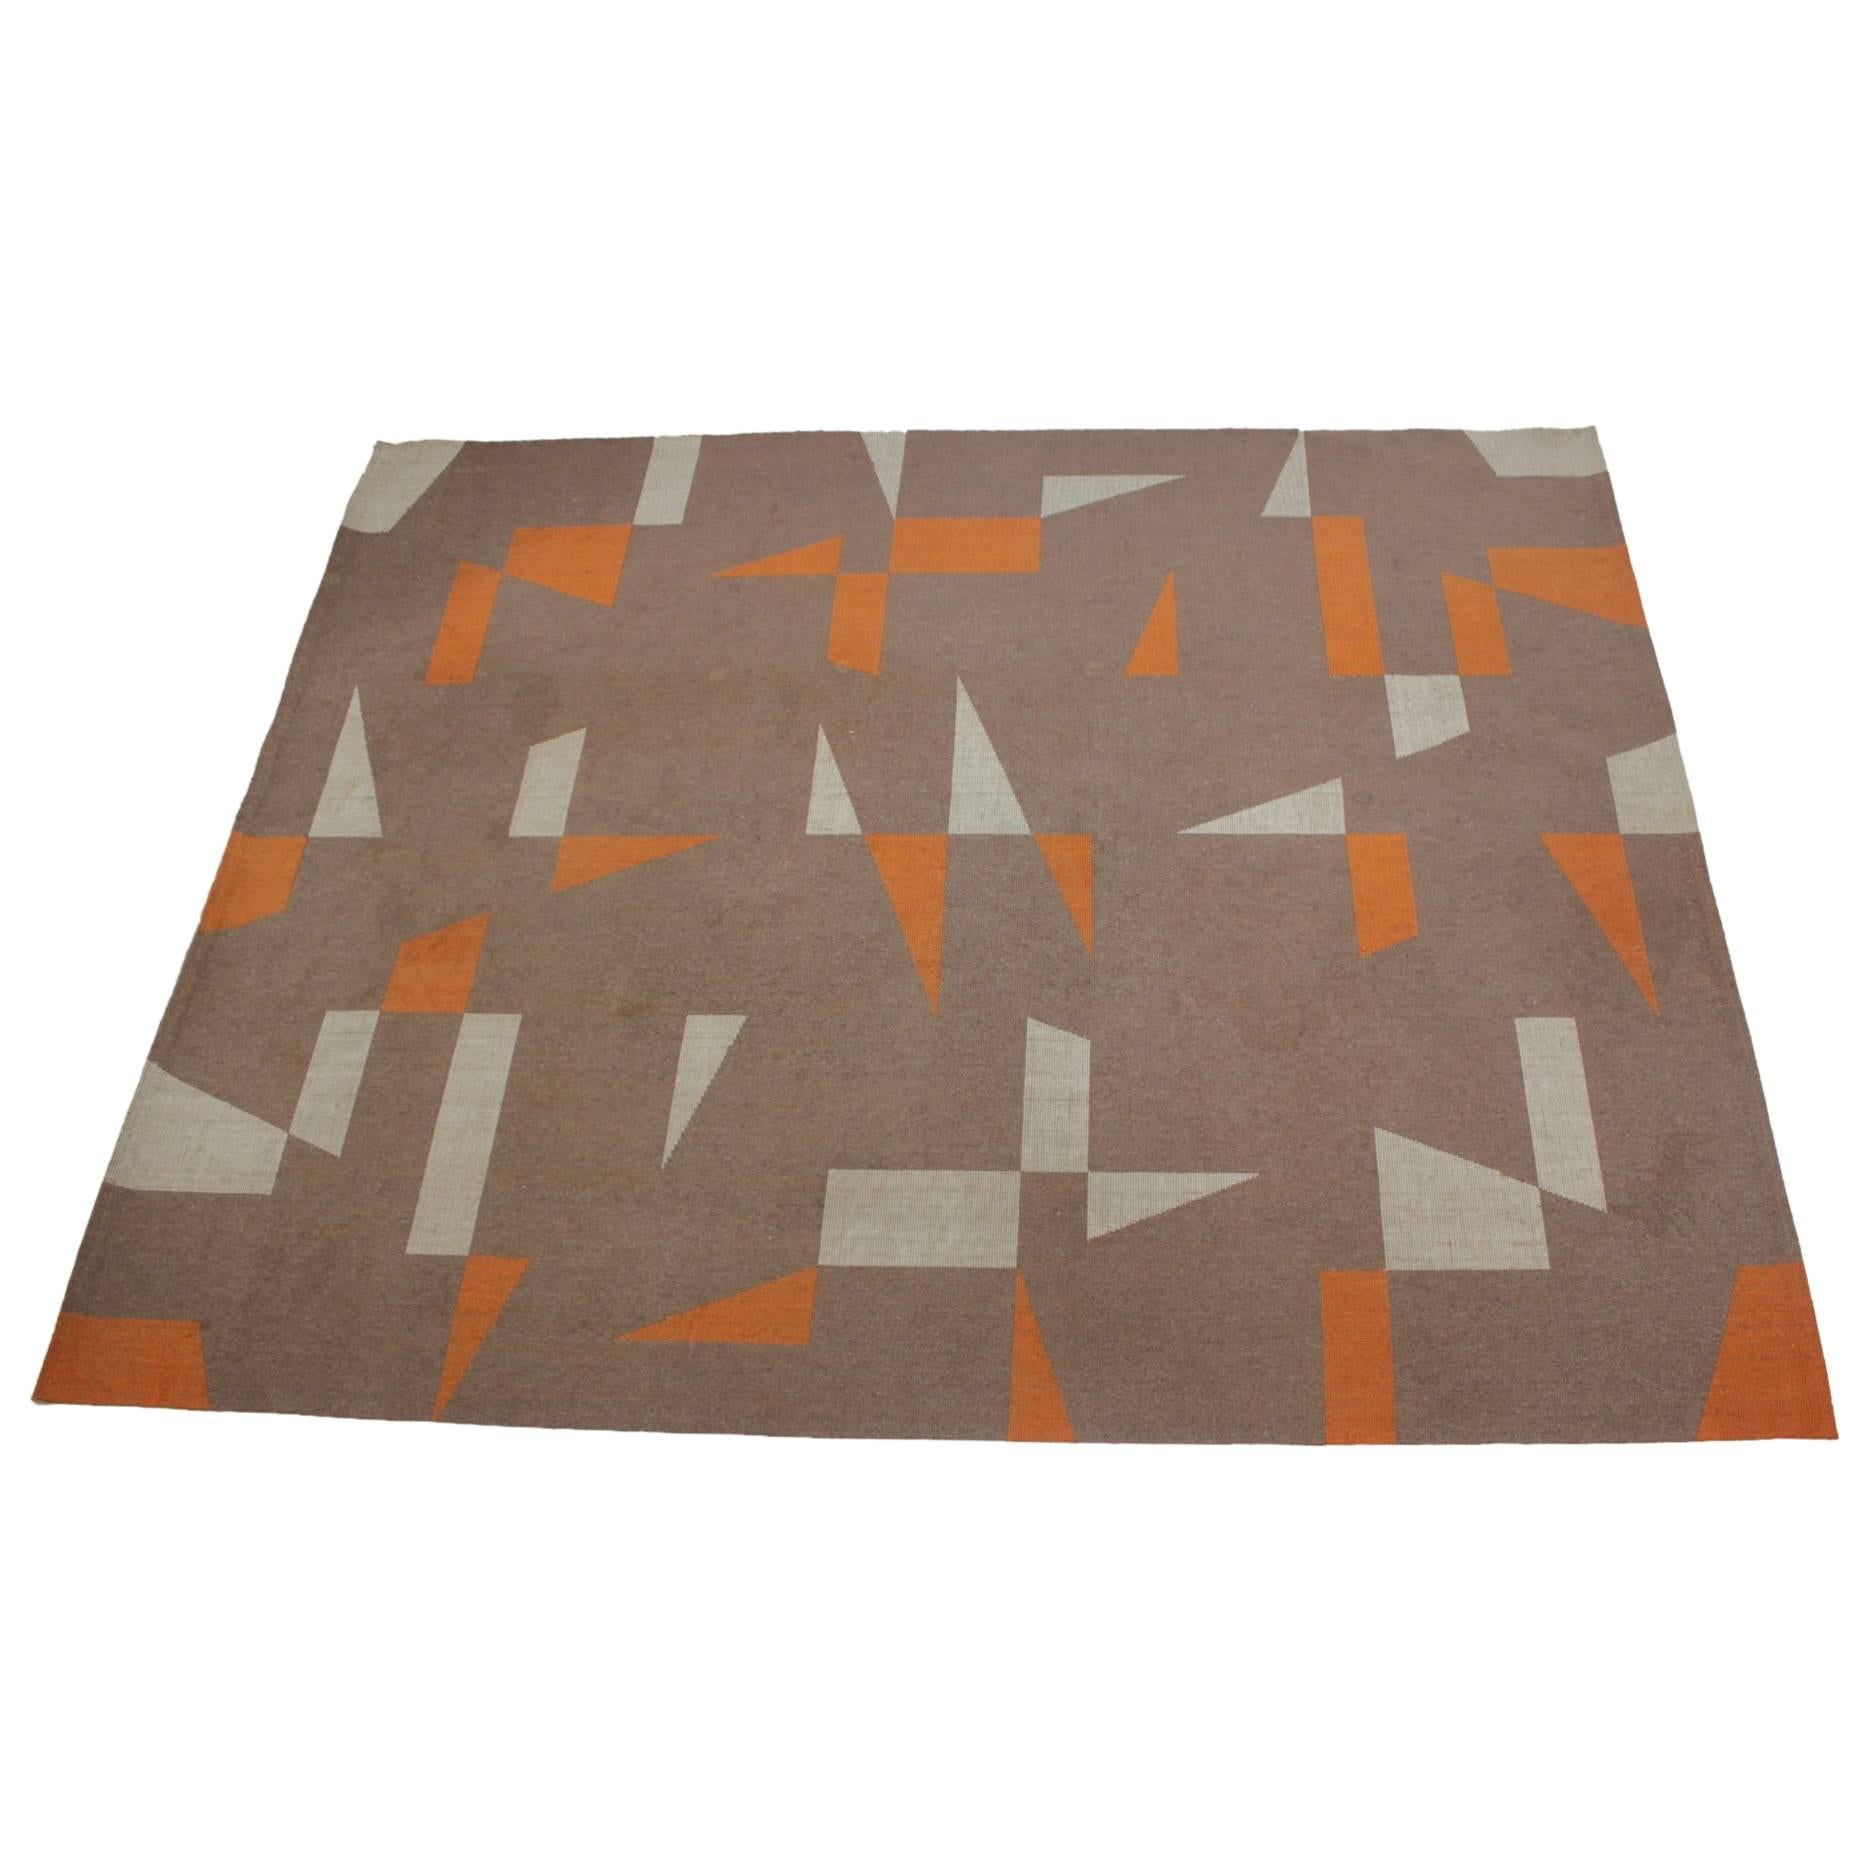 Midcentury Design Geometric Carpet or Rug